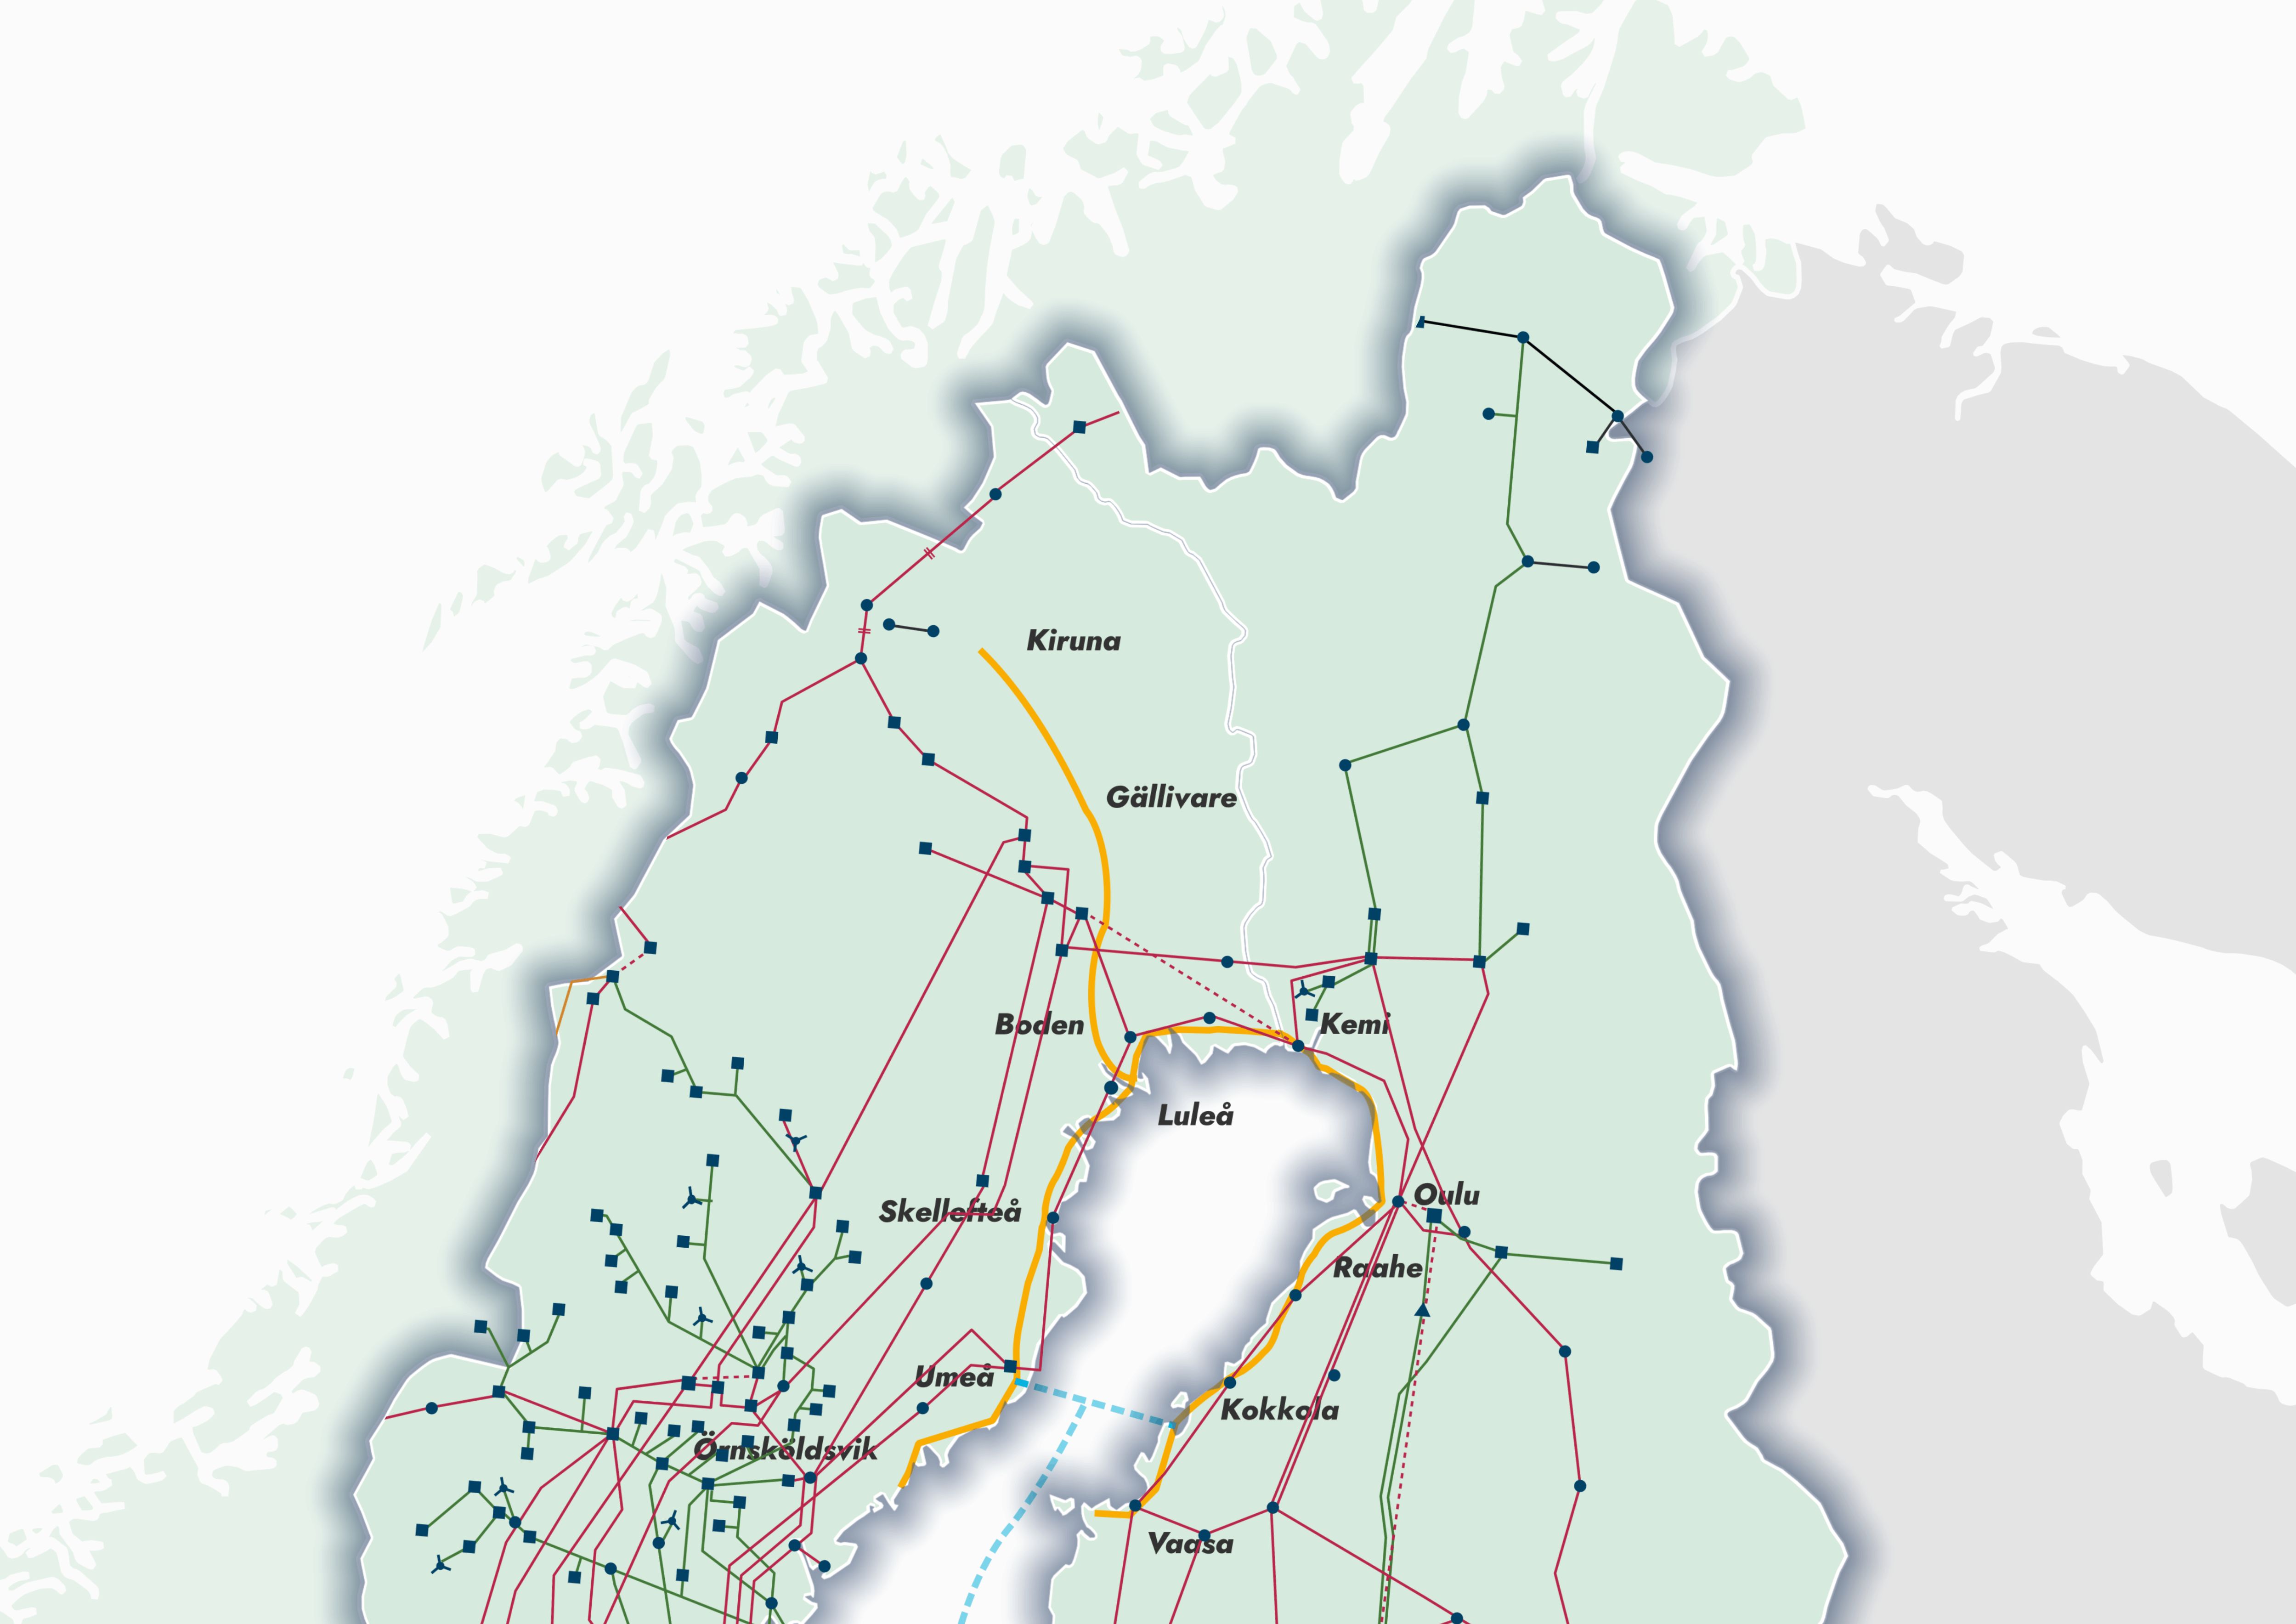 Gasgrid Finland ja Nordion Energi julkistavat Nordic Hydrogen Routen – Euroopan ensimmäisen laajamittaisen rajat ylittävän vetyverkoston